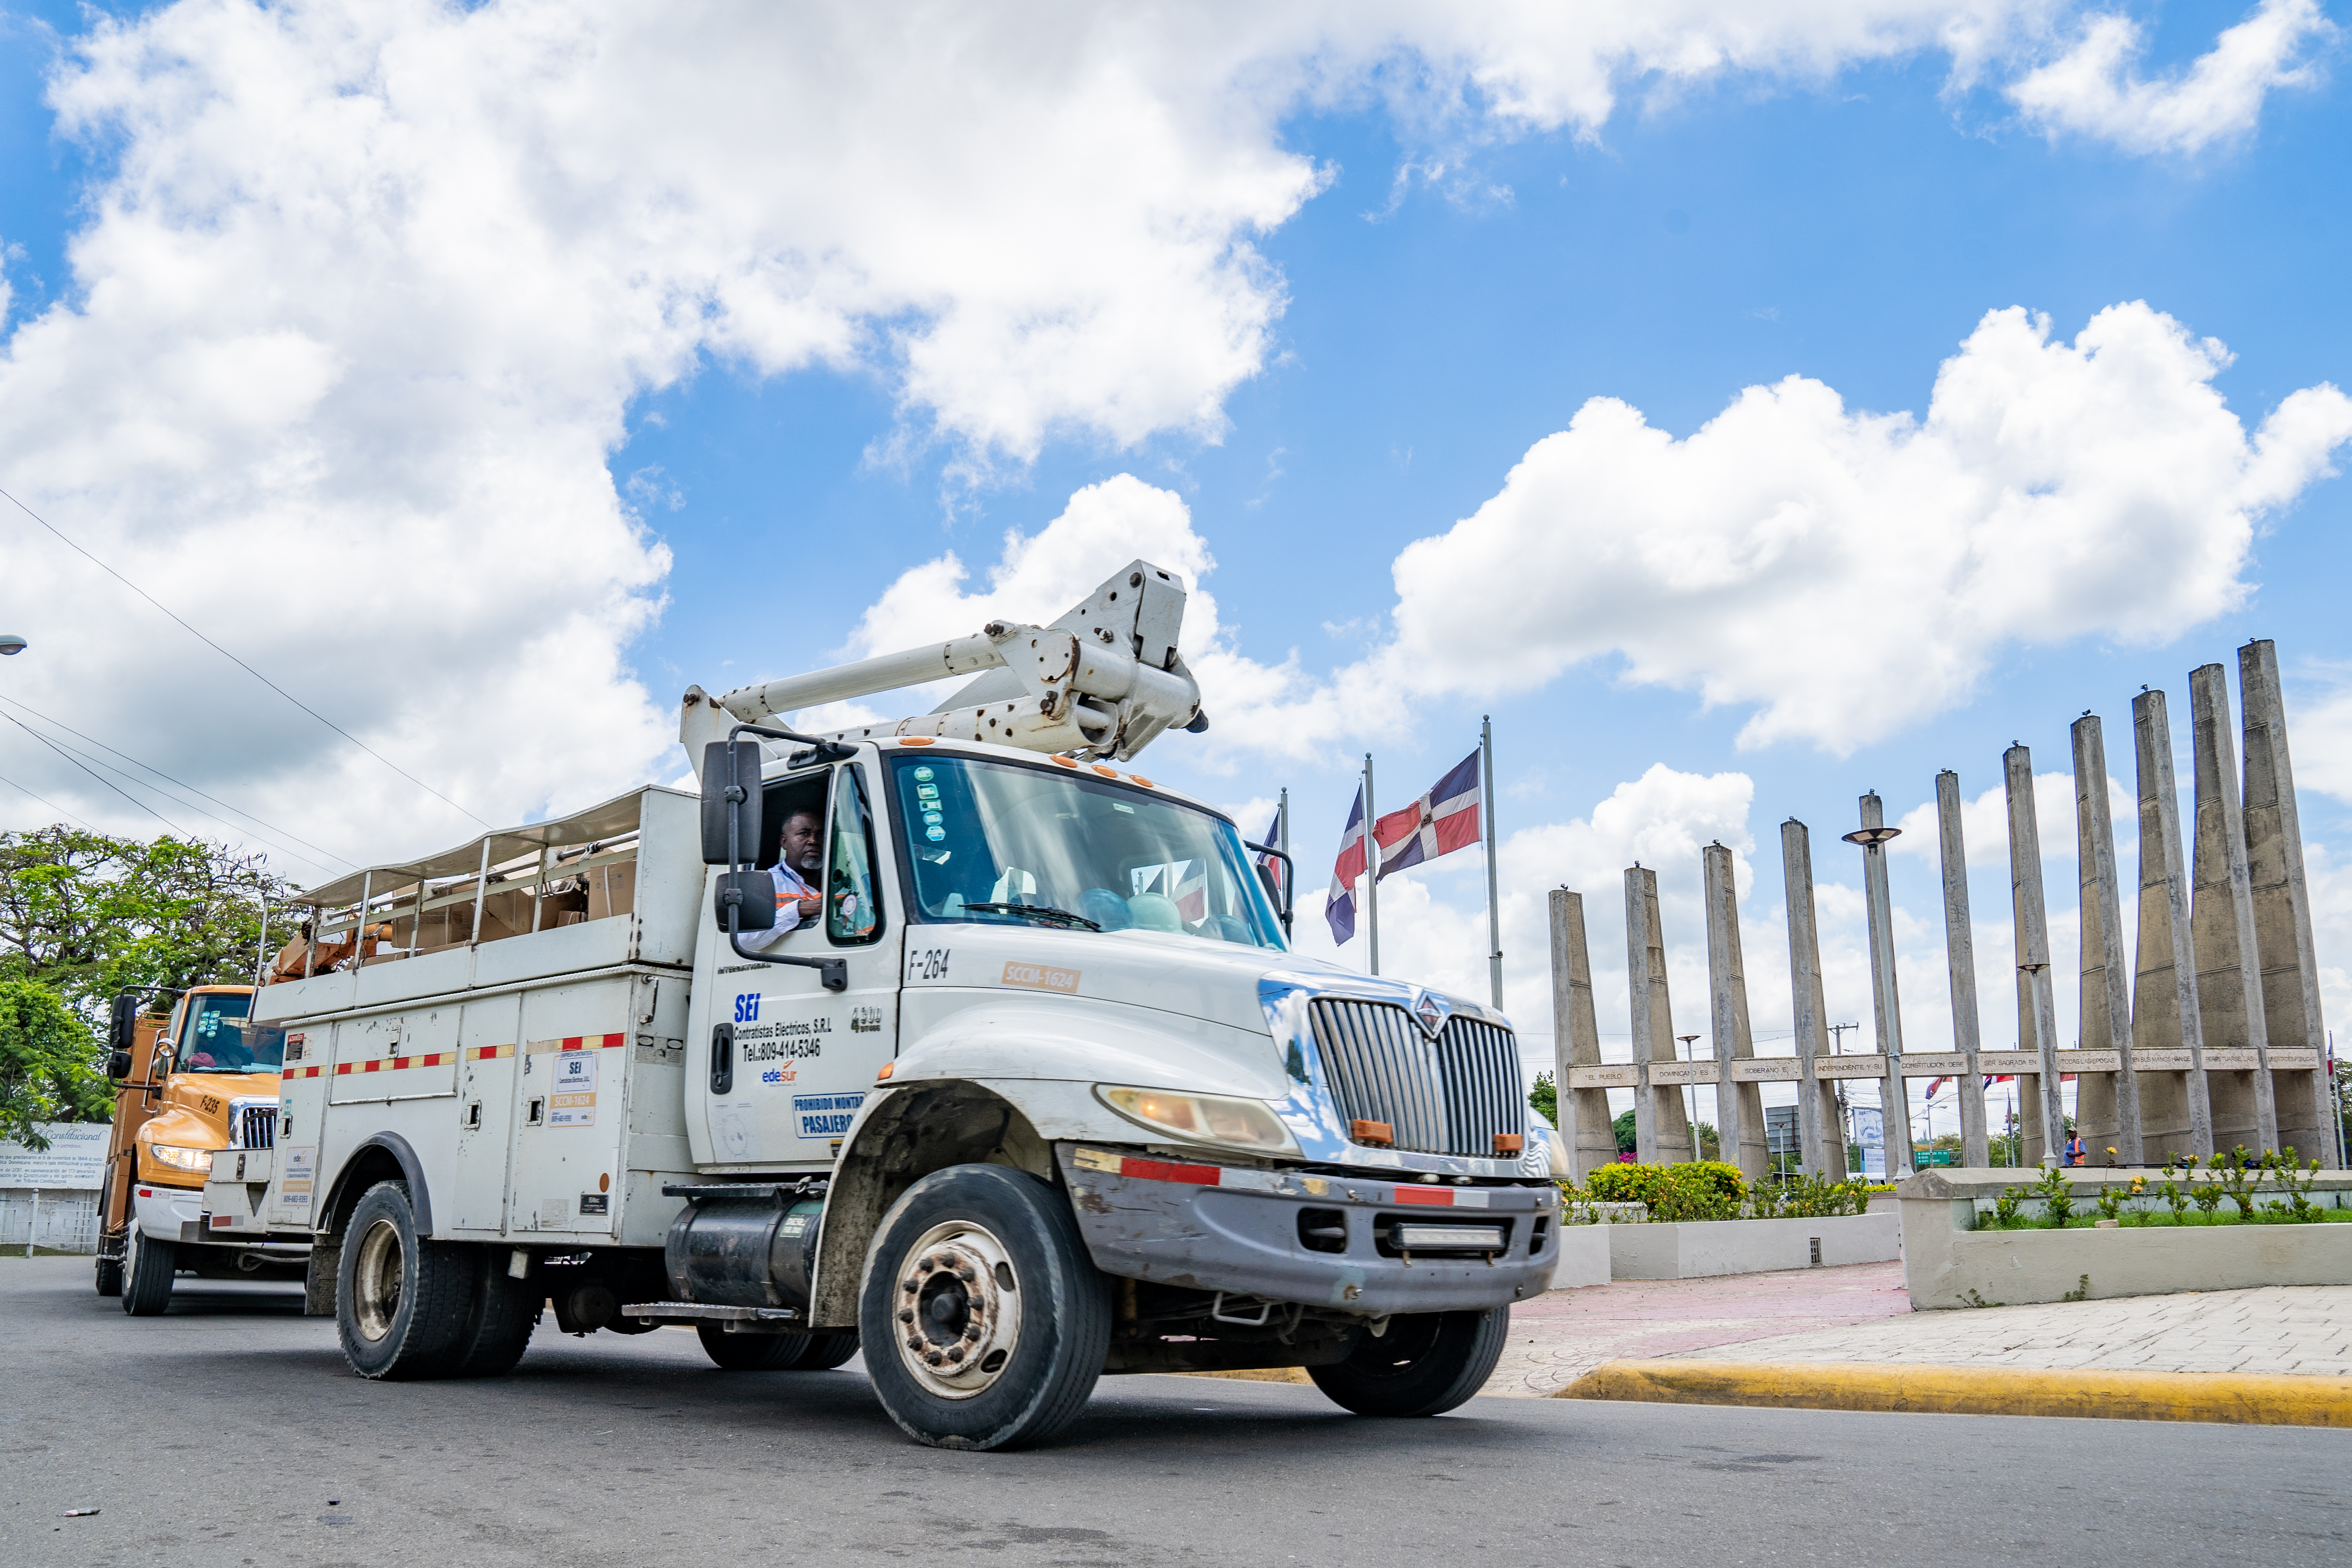 REPÚBLICA DOMINICANA: Edesur inicia colocación de 1,000 luminarias en sectores de San Cristóbal